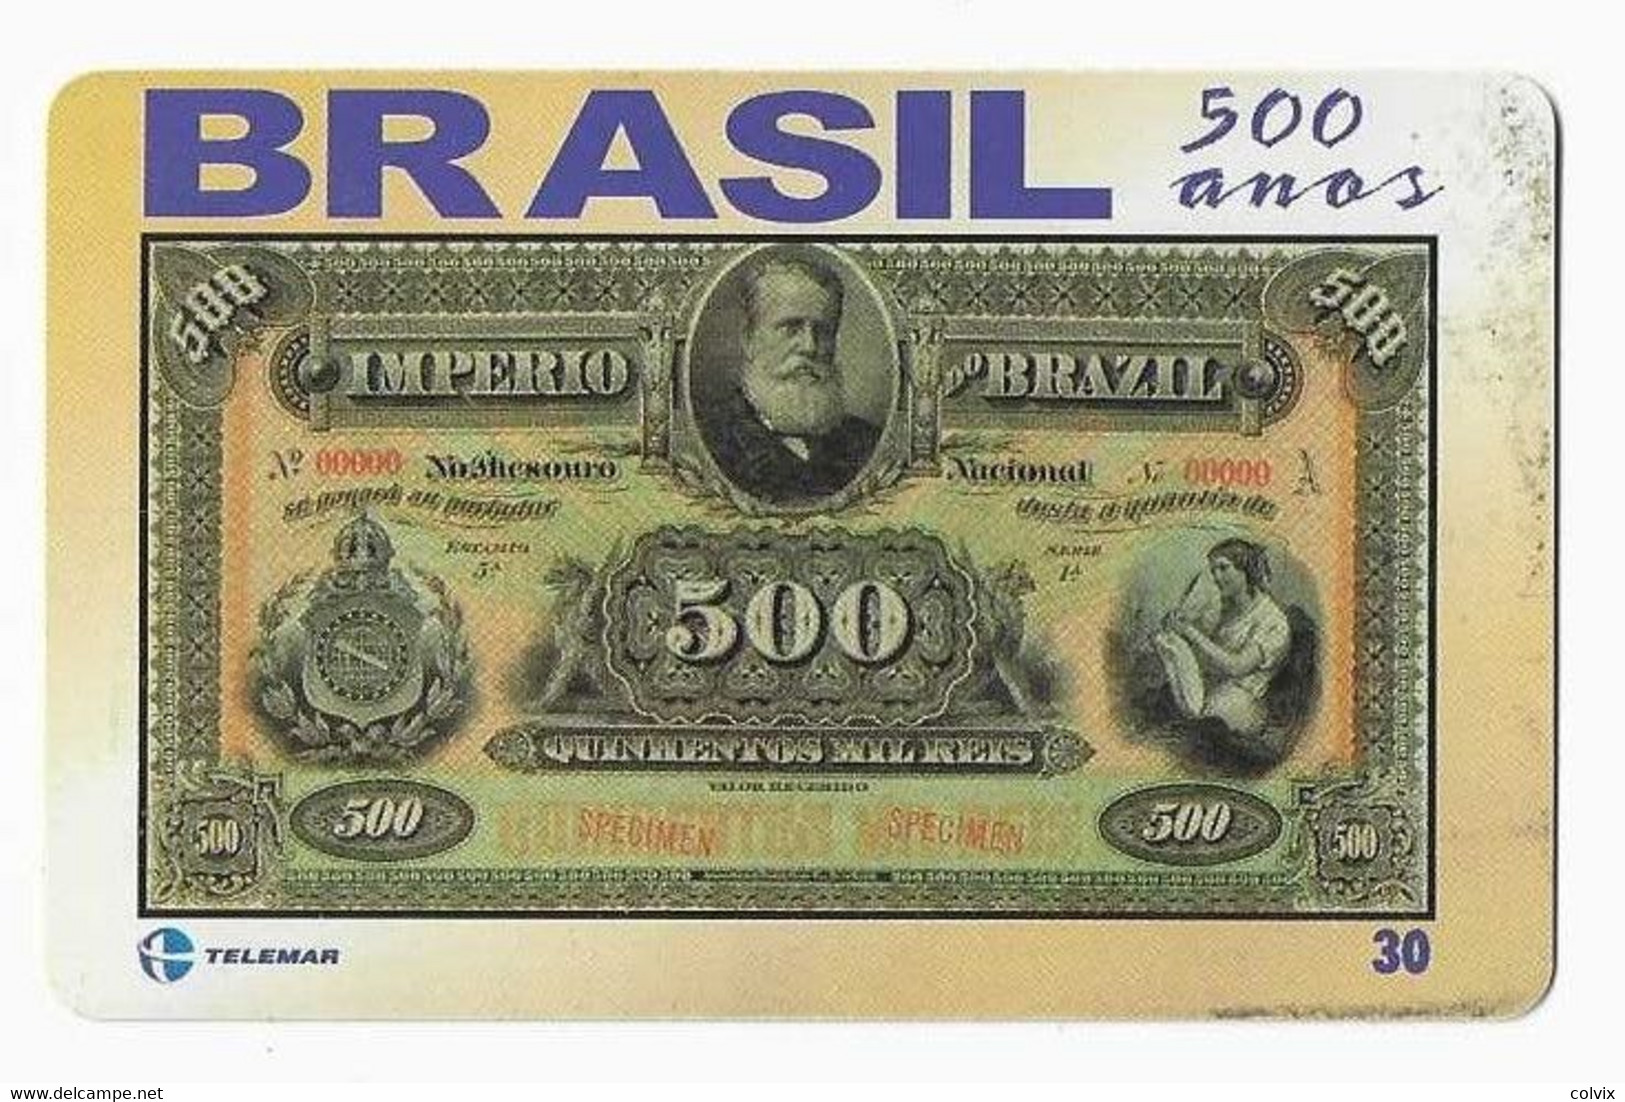 BRESIL TELECARTE BILLET DE BANQUE 1885 - Timbres & Monnaies